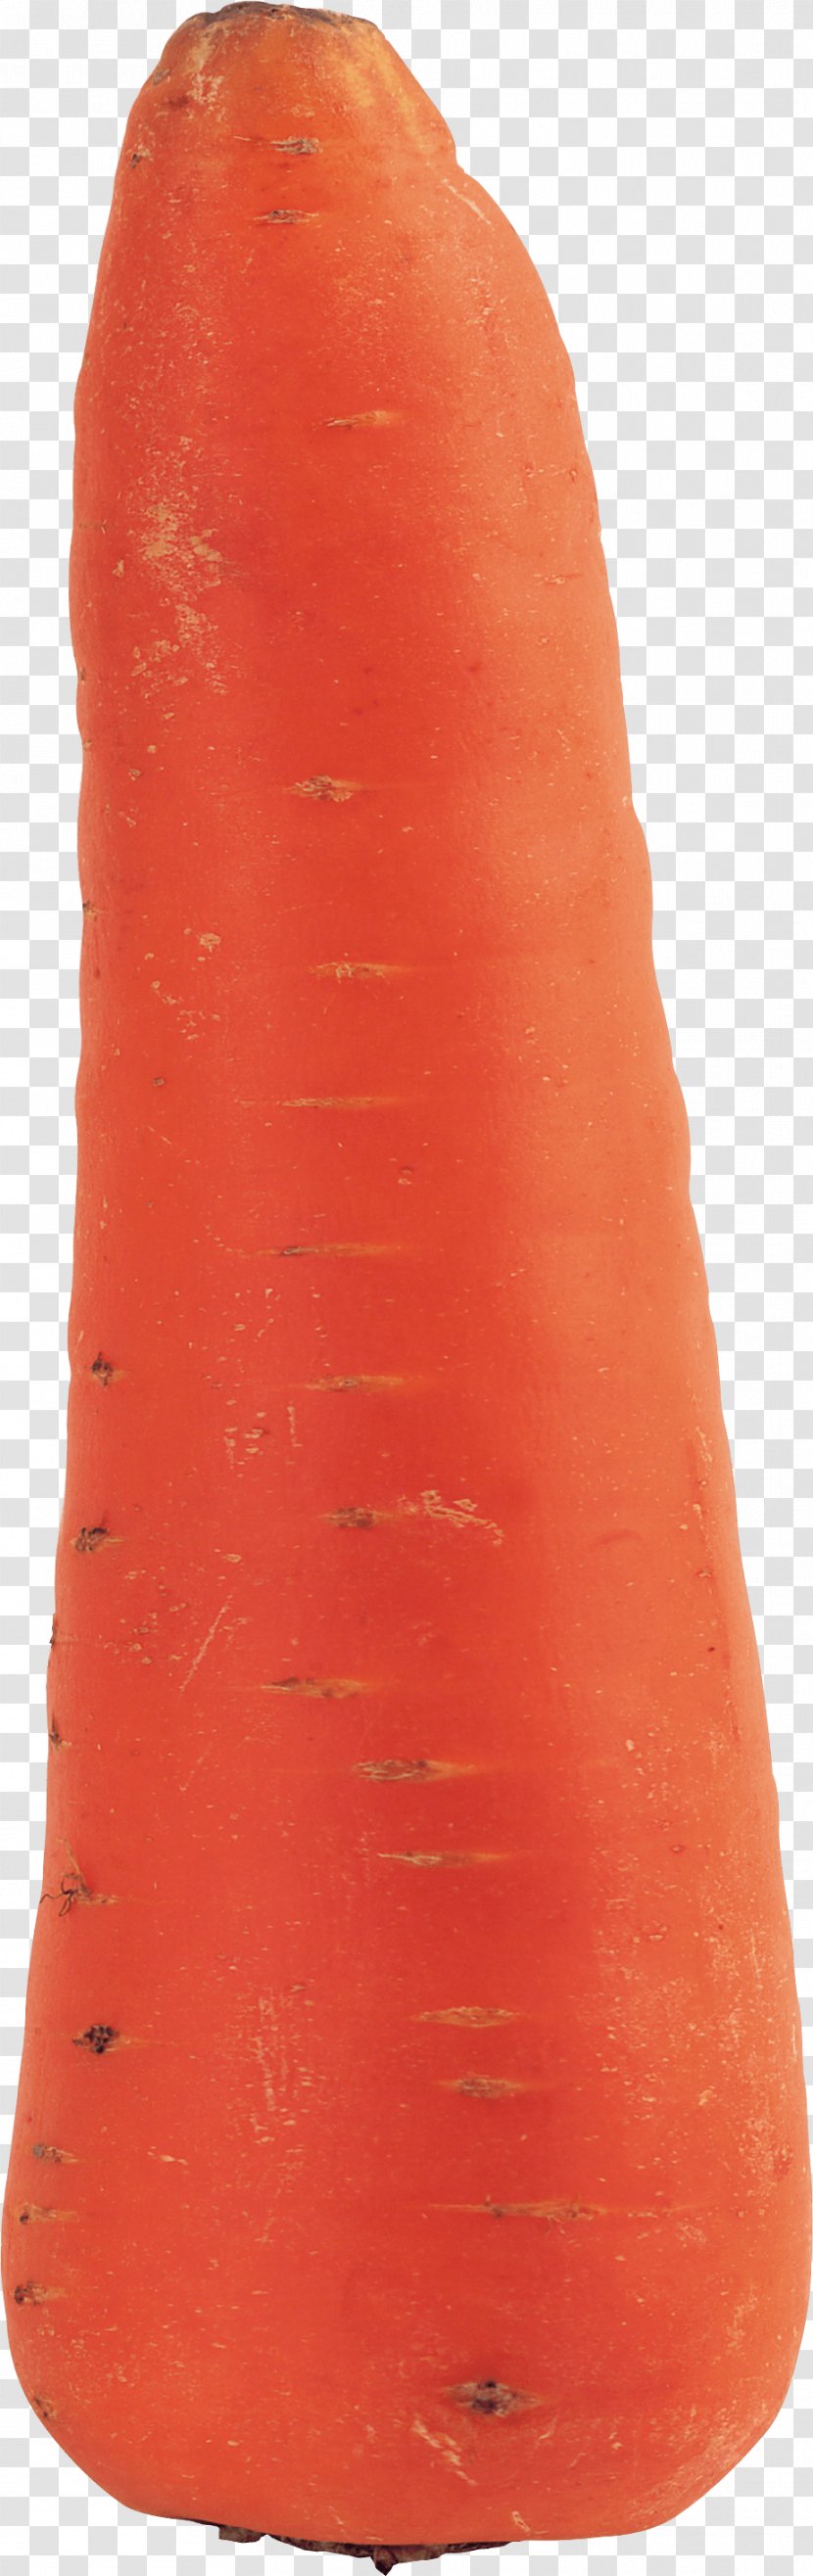 Carrot Clip Art - Daucus Carota - Image Transparent PNG